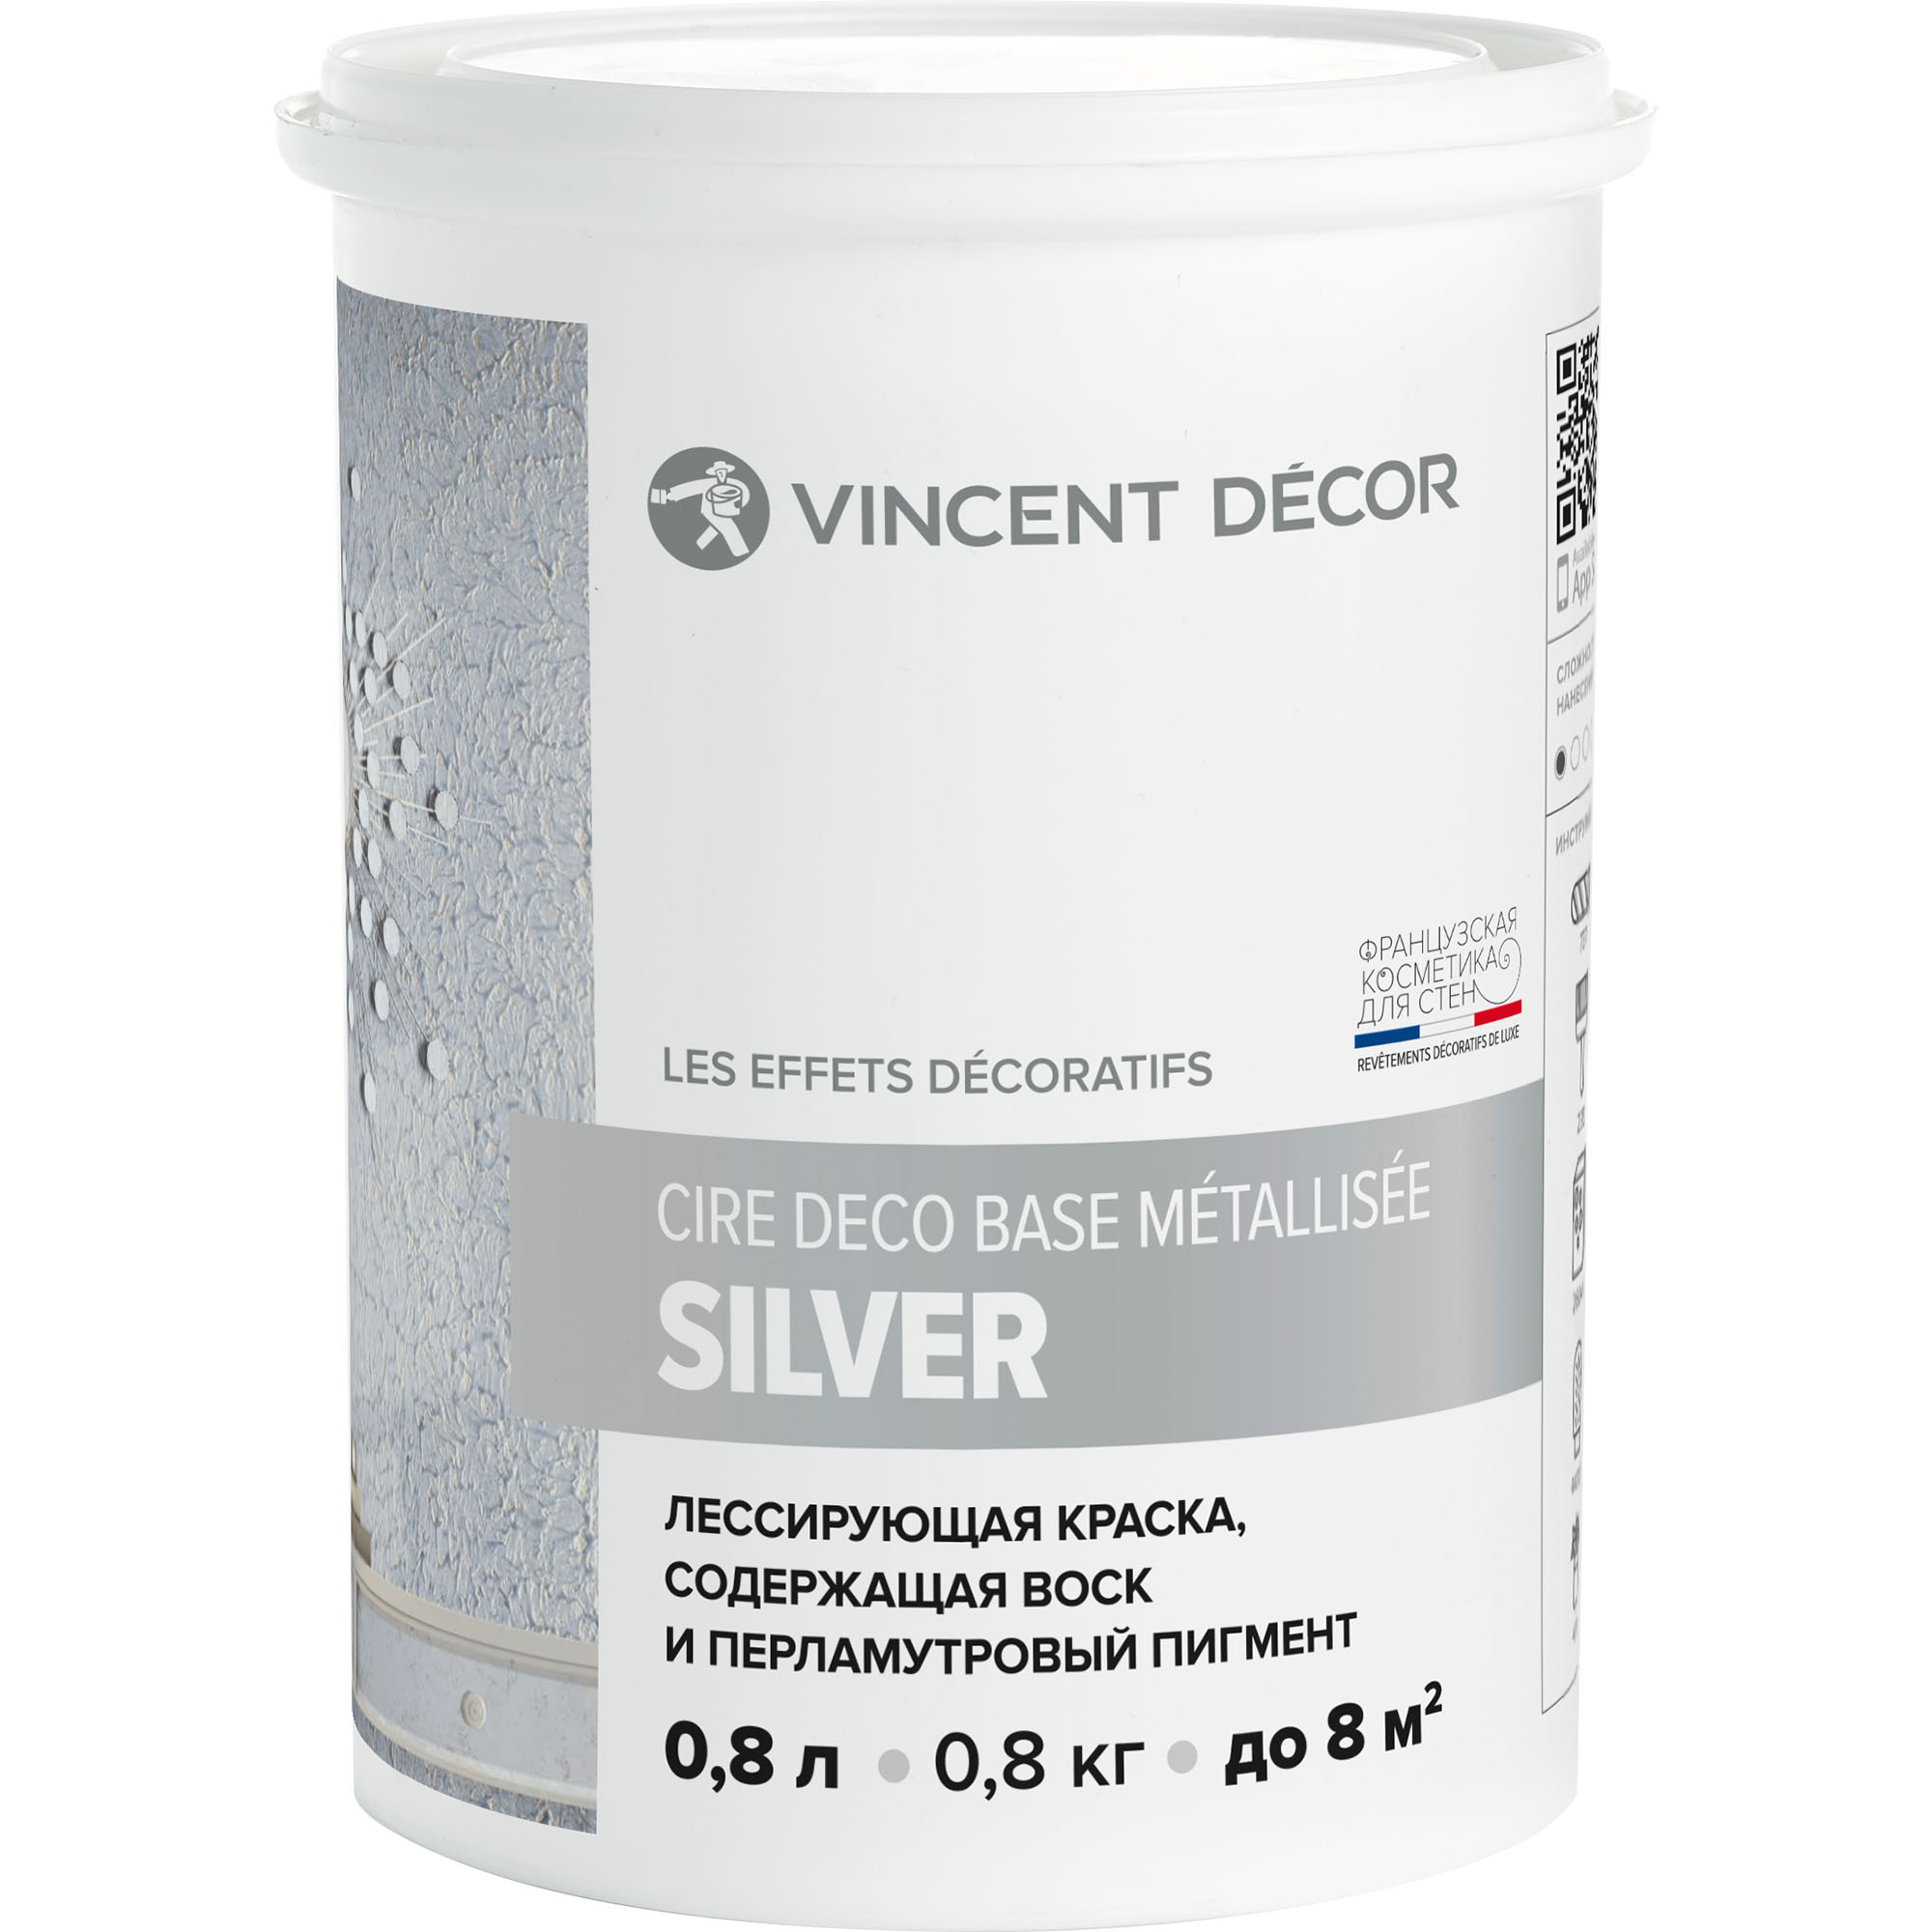 Краска лессирующая для декоративных покрытий Vincent Decor Cire deco base Metallisee Silver серебро 0,8 л краска декоративная maitre deco décor серебро полуглянцевая серебряный 0 2 л